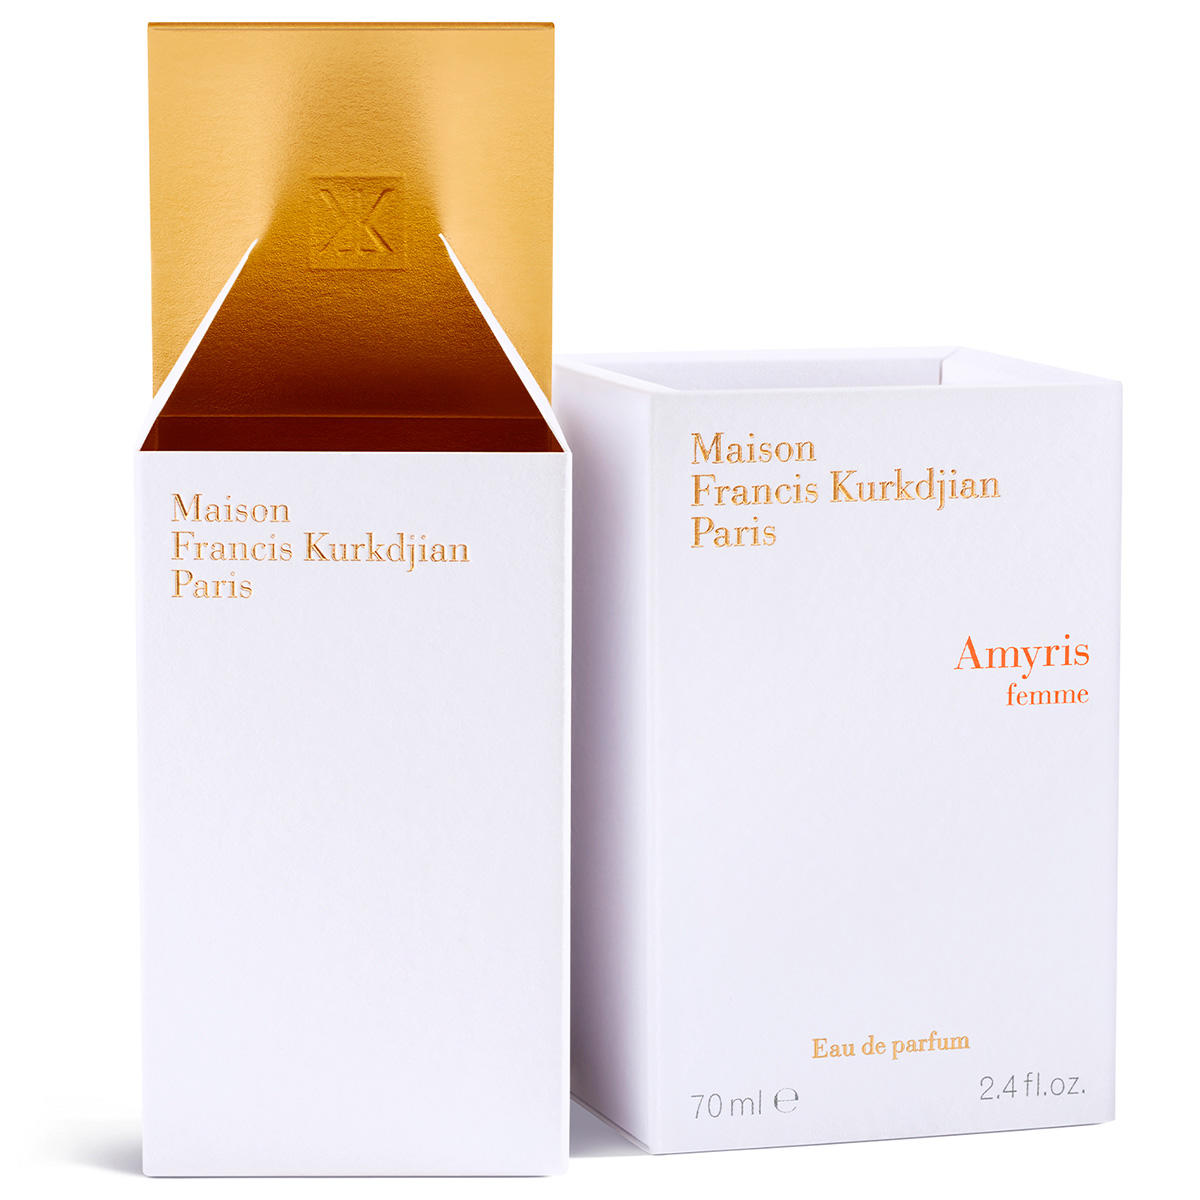 Maison Francis Kurkdjian Paris Amyris femme Eau de Parfum 70 ml - 4